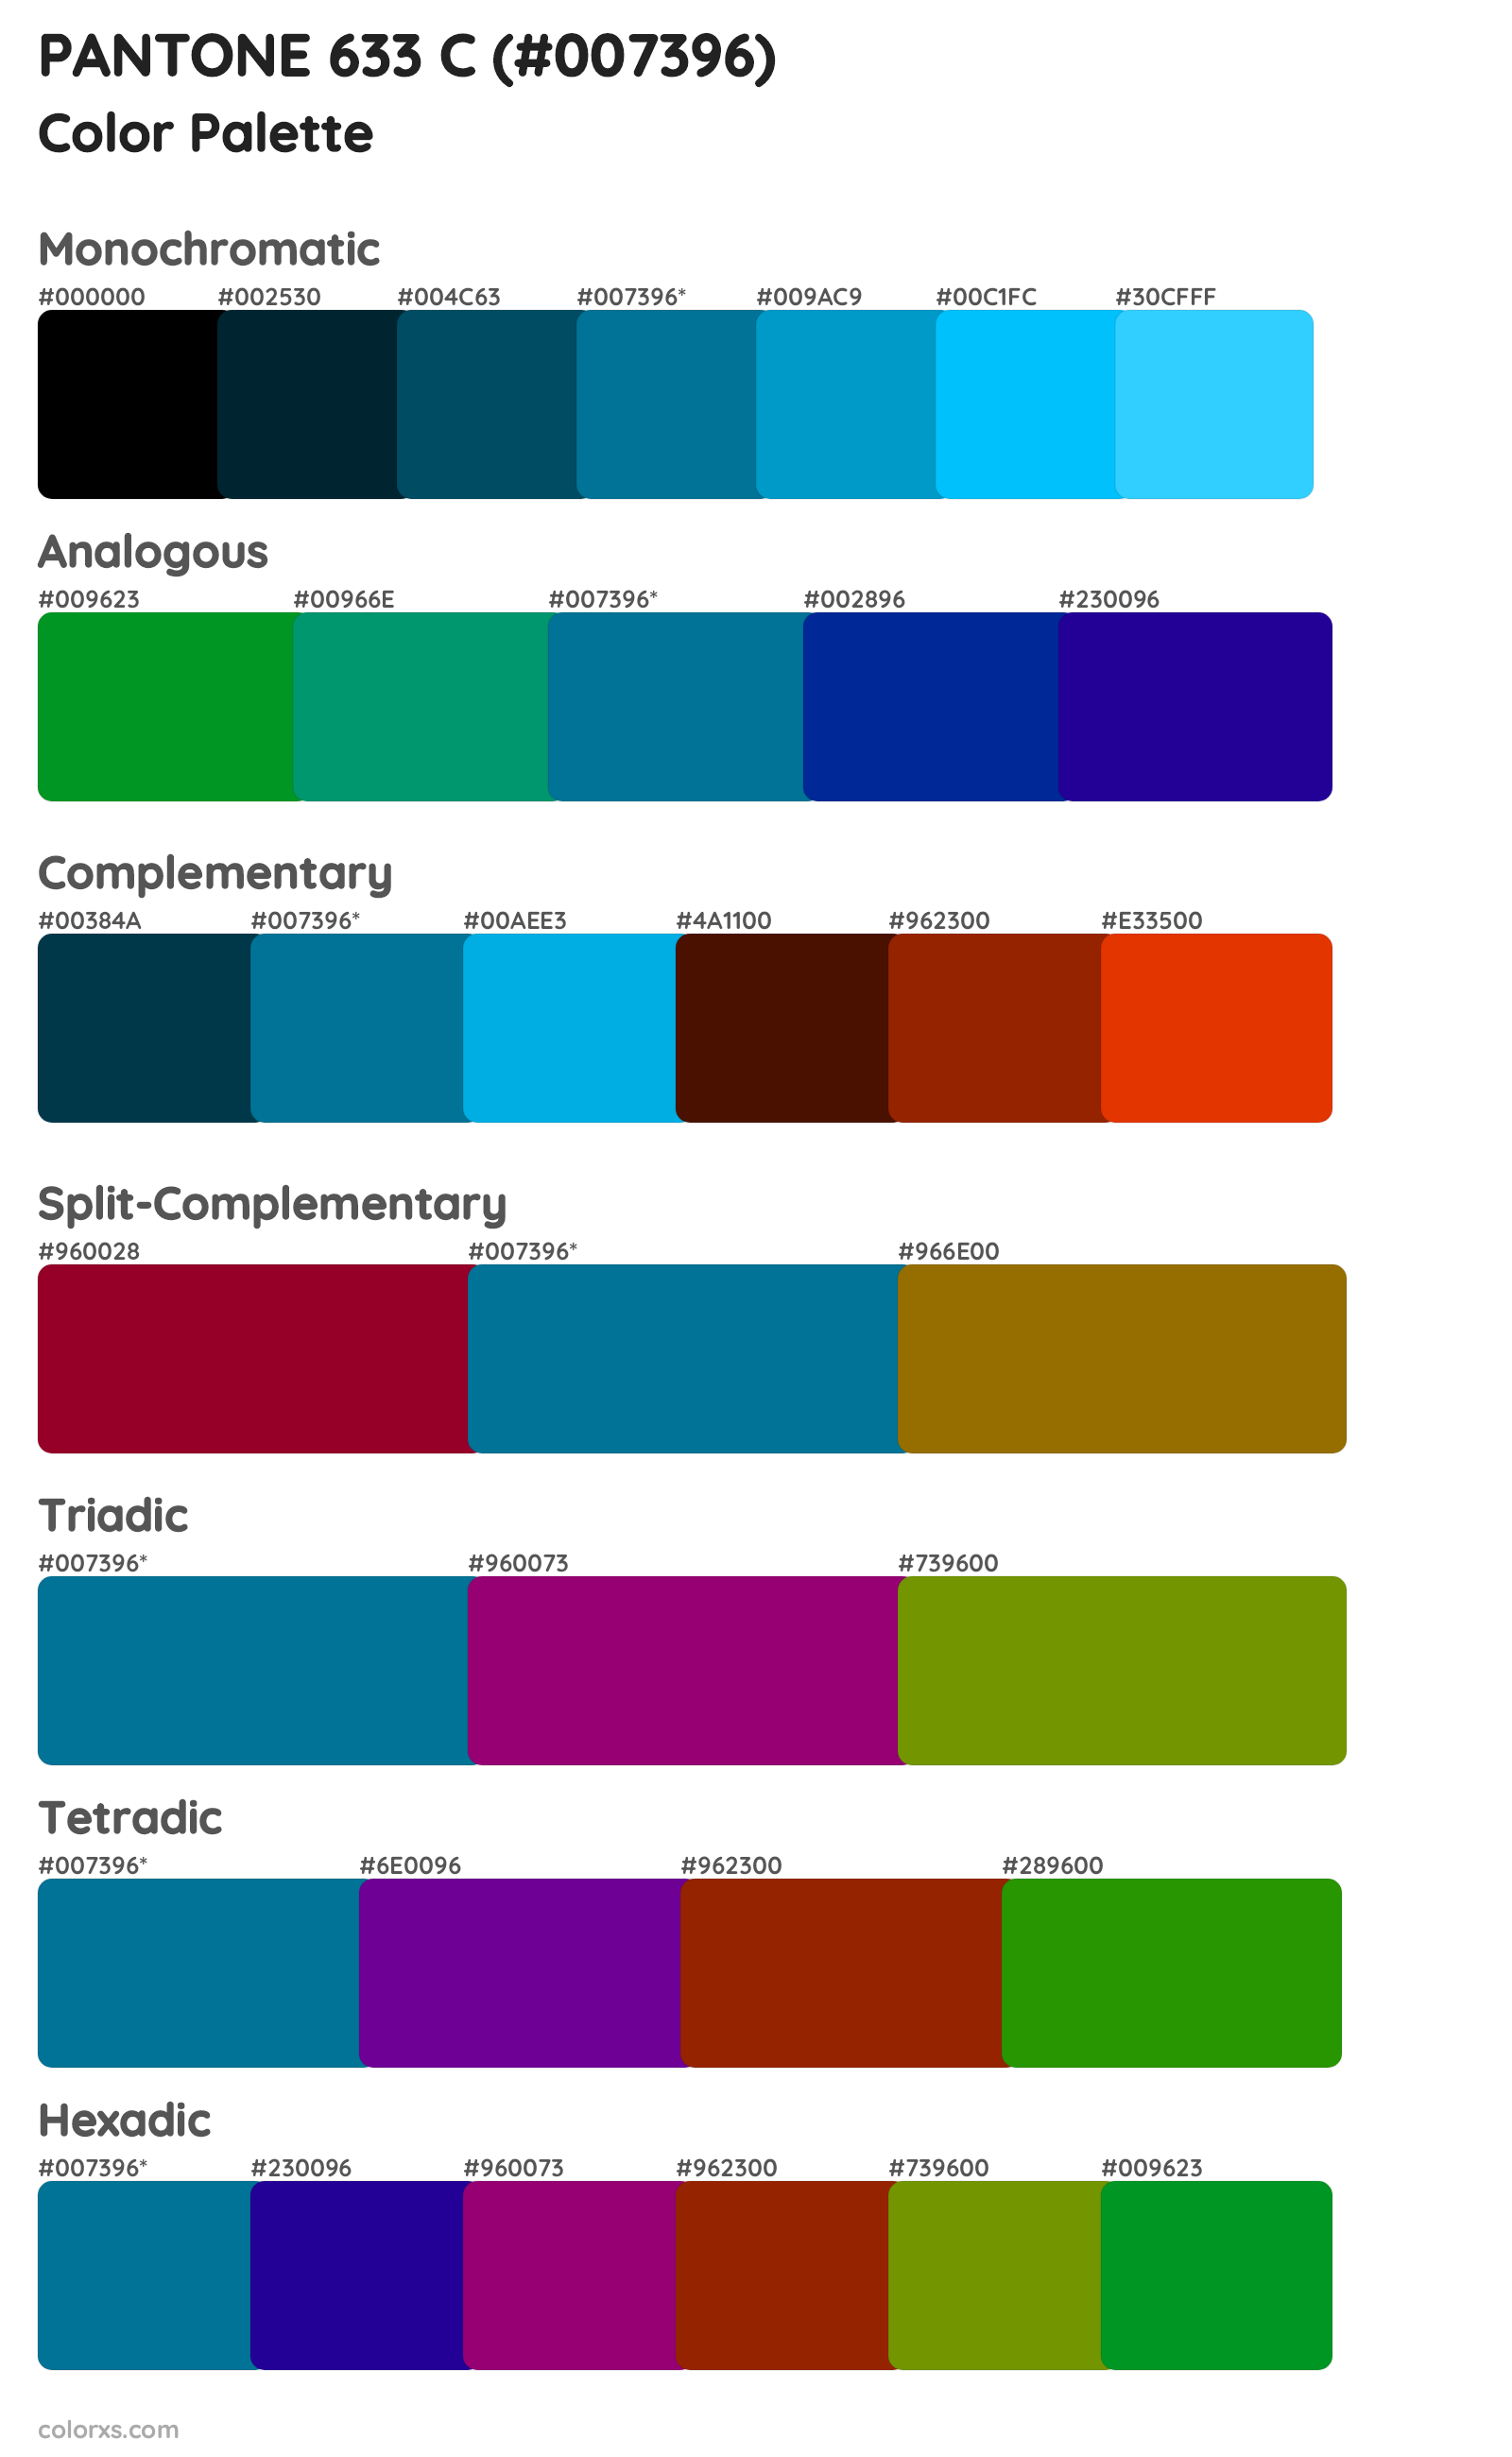 PANTONE 633 C Color Scheme Palettes